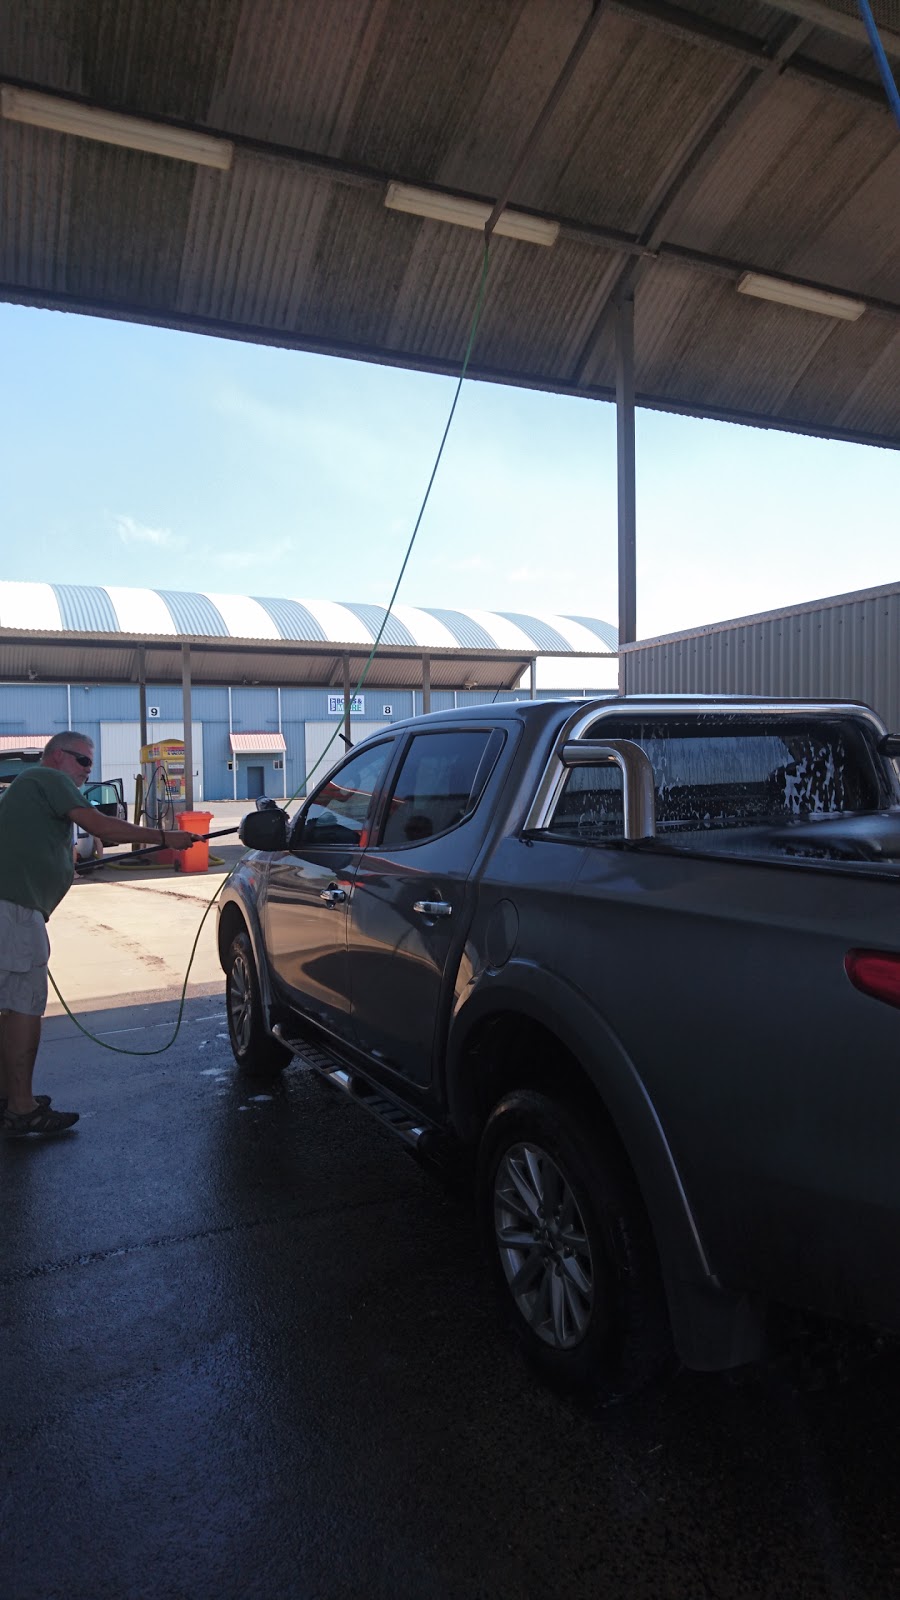 Lockyer Car and Dog Wash | car wash | 37 Western Dr, Gatton QLD 4343, Australia | 0408746850 OR +61 408 746 850